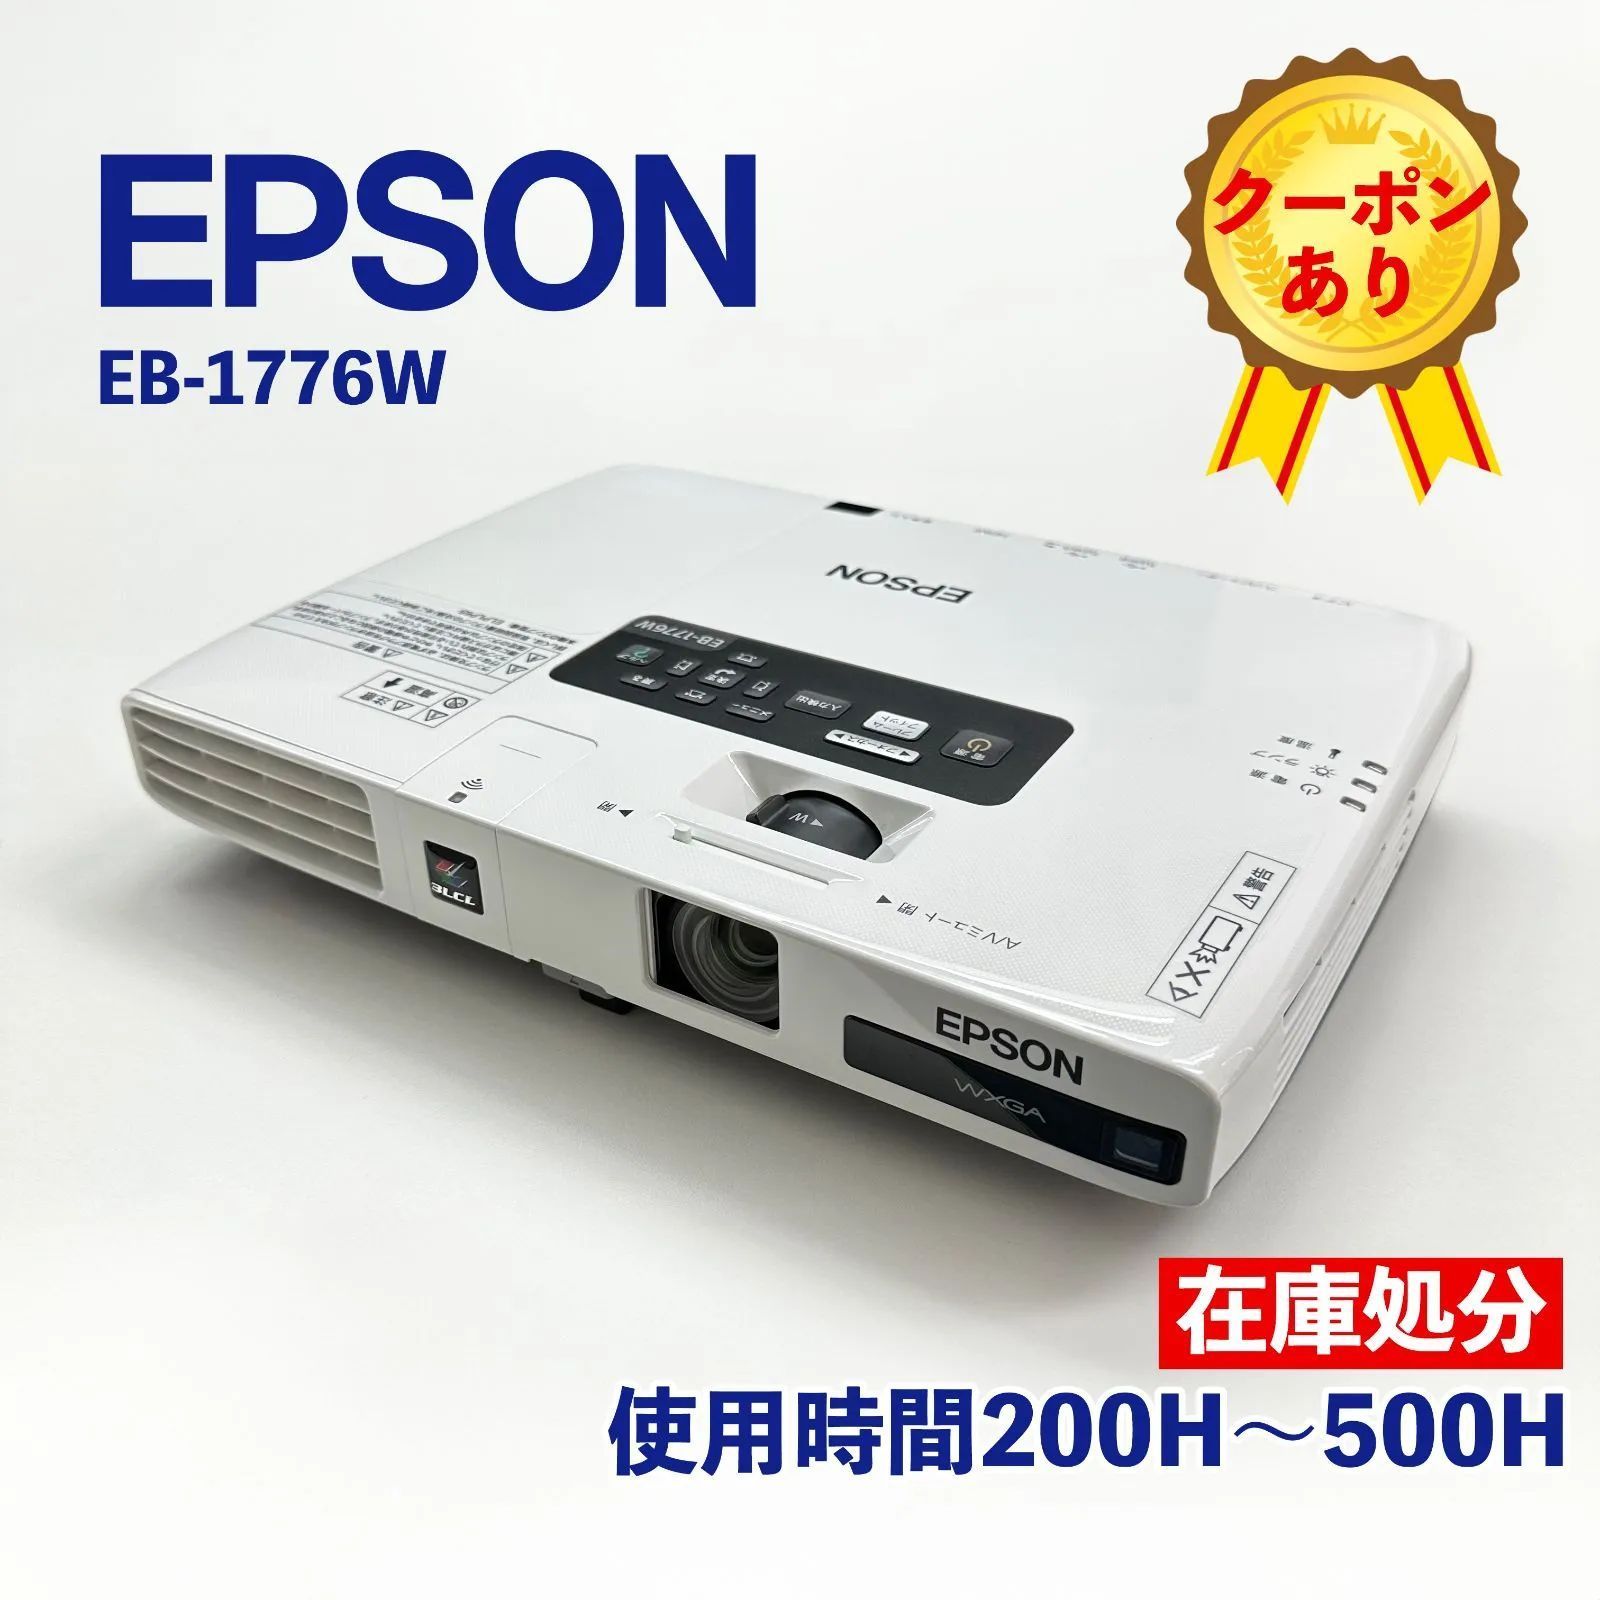 EPSON プロジェクター EB-1776W 美品 ランプ時間183H - プロジェクター